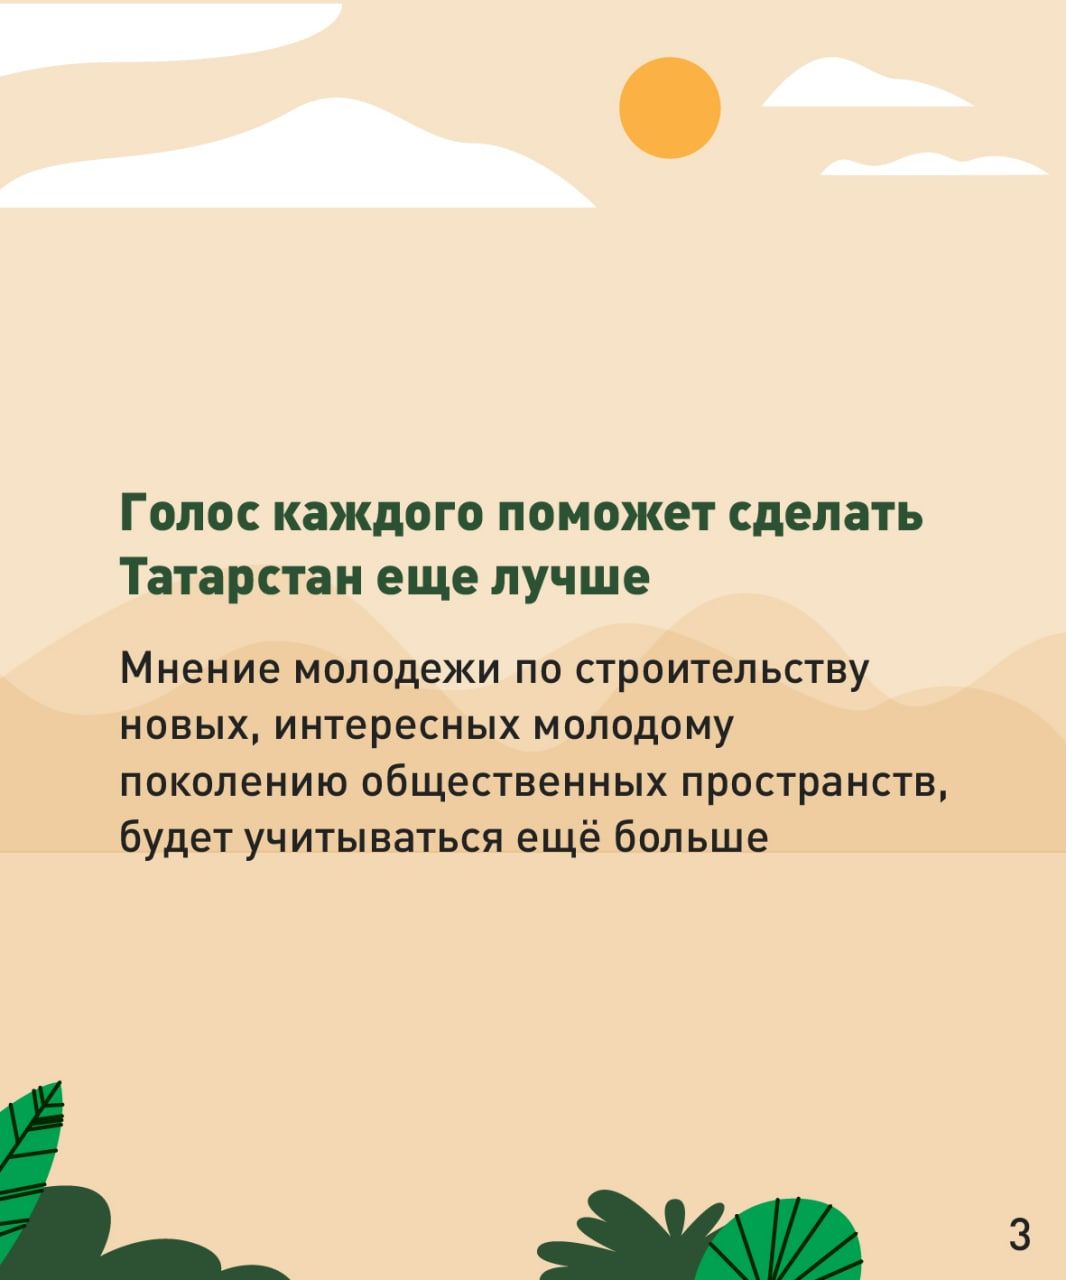 Татарстан халкы 2023 елда төзекләндереләчәк ишегалды яки паркны сайлый ала